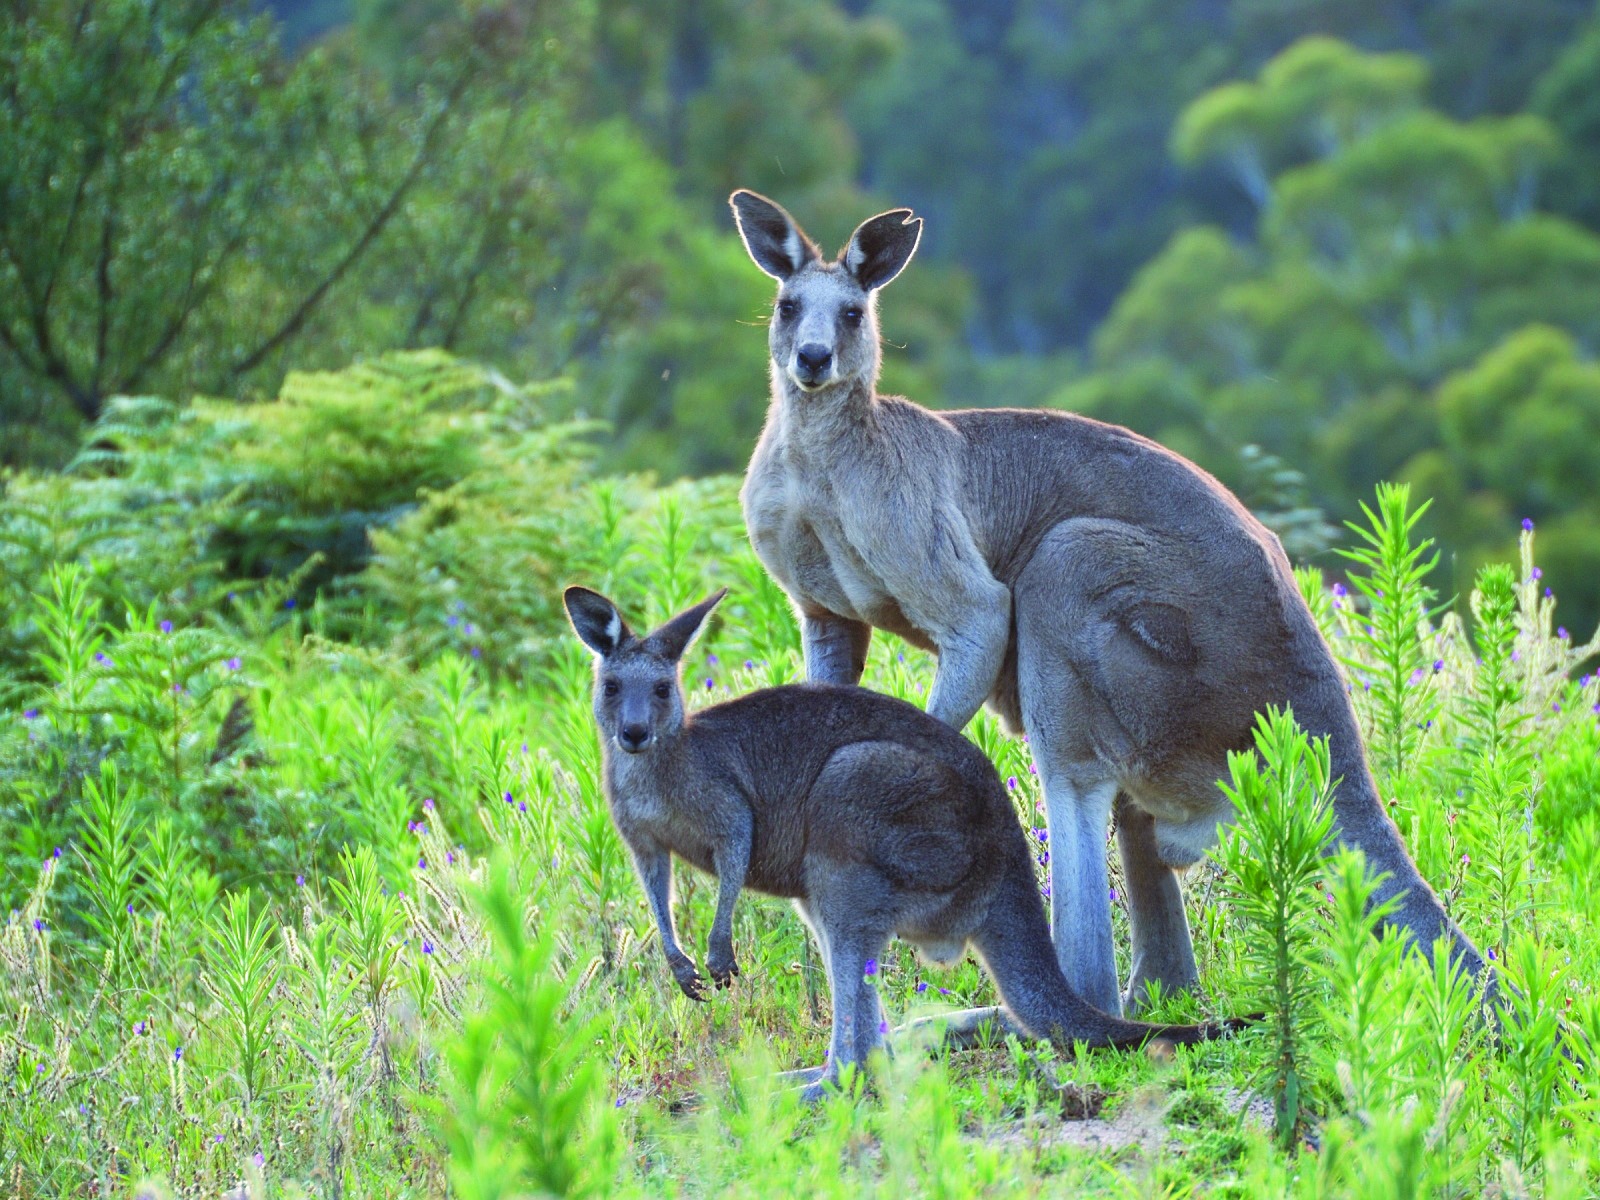 Two kangaroos in nature